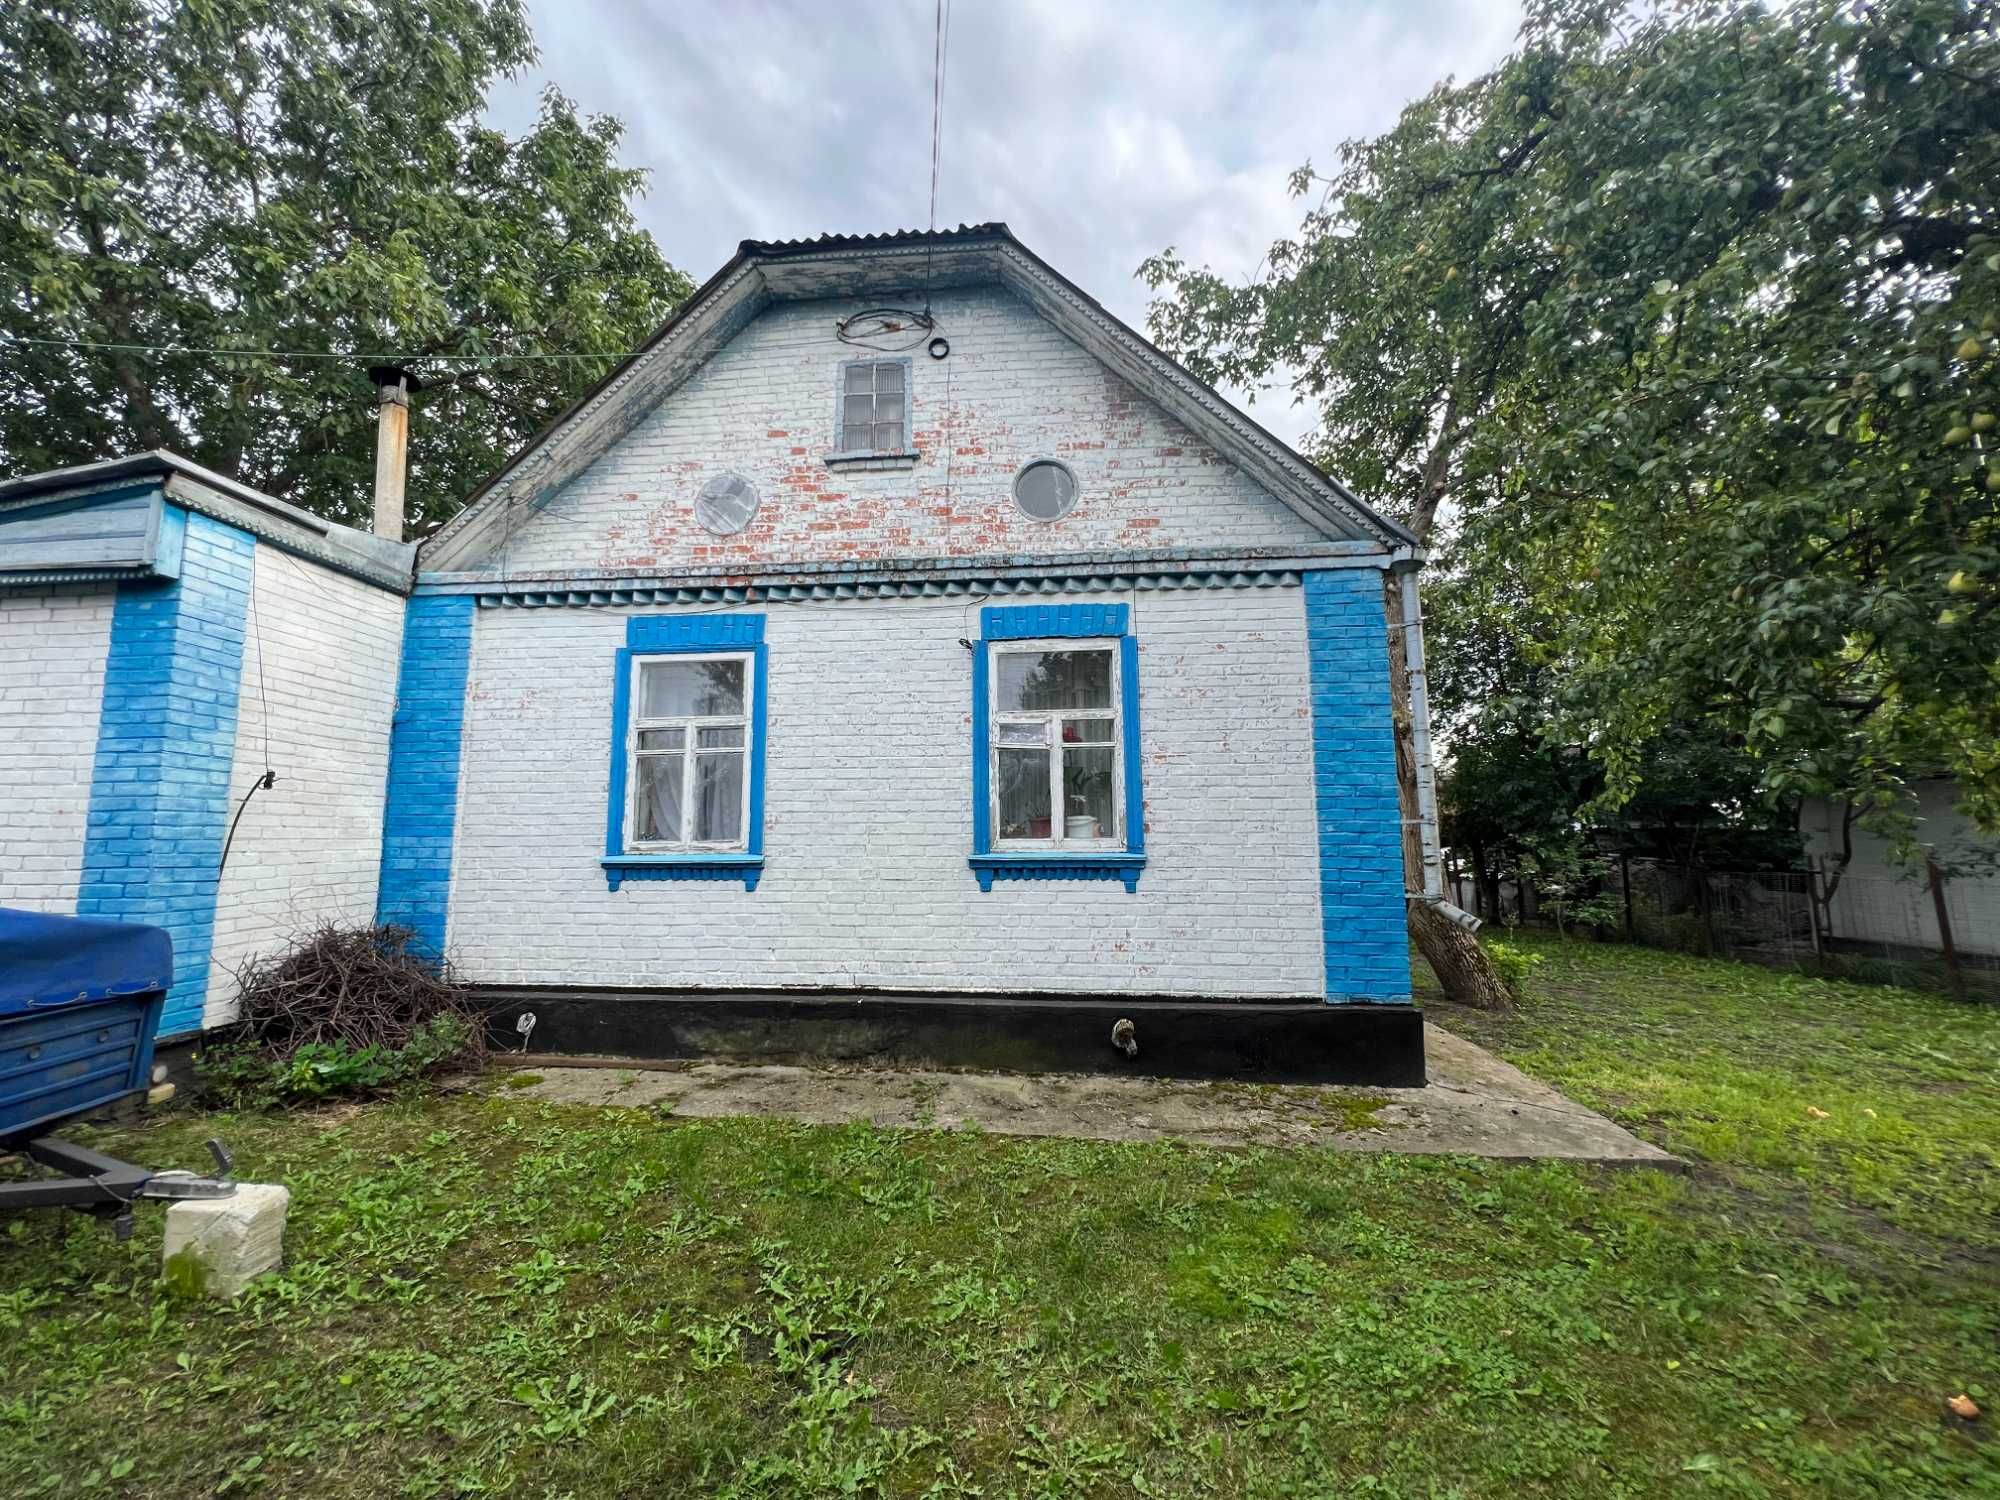 Продаж будинку в селі Садове, 72 м2 до м. Березань 1.5 км. ж/д поруч.